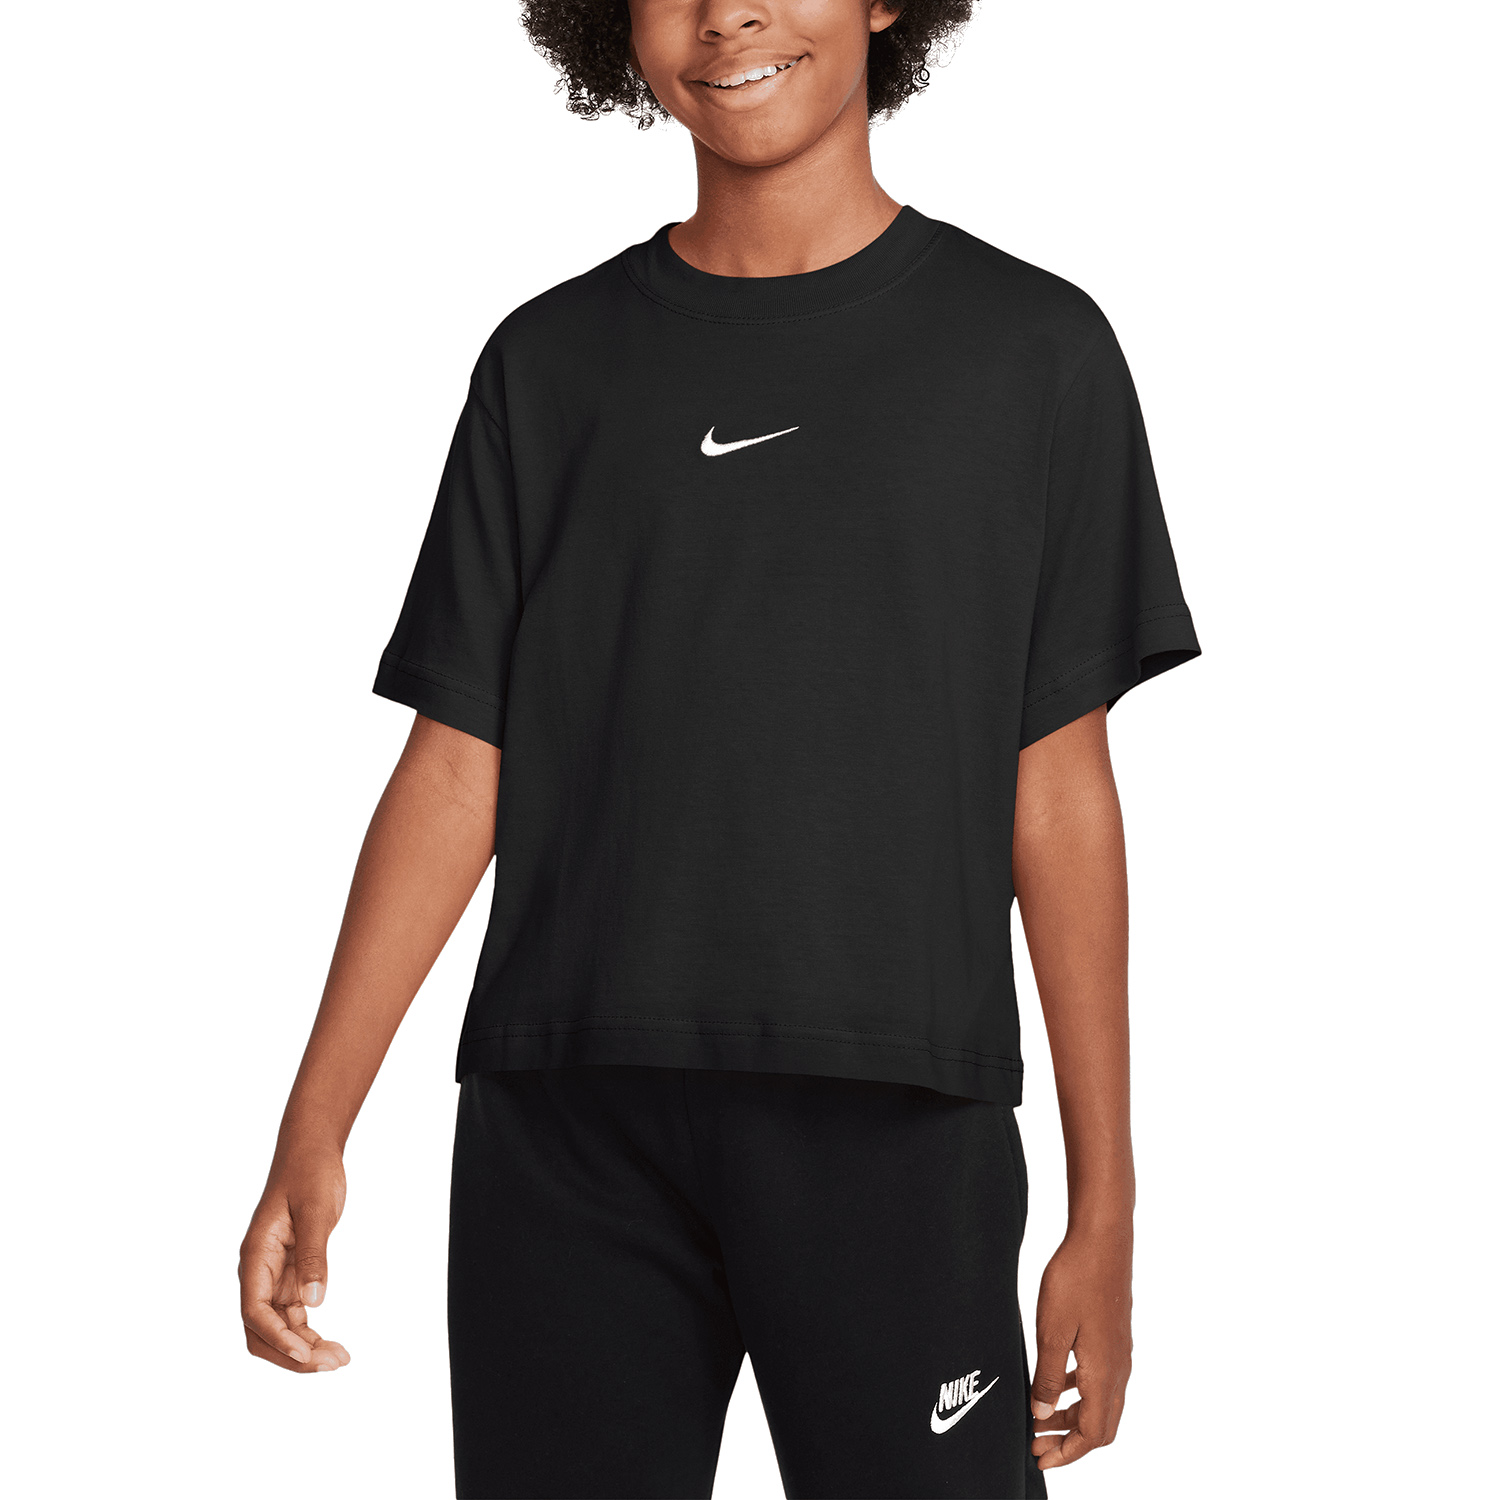 Nike Swoosh Camiseta Niña - Black/White